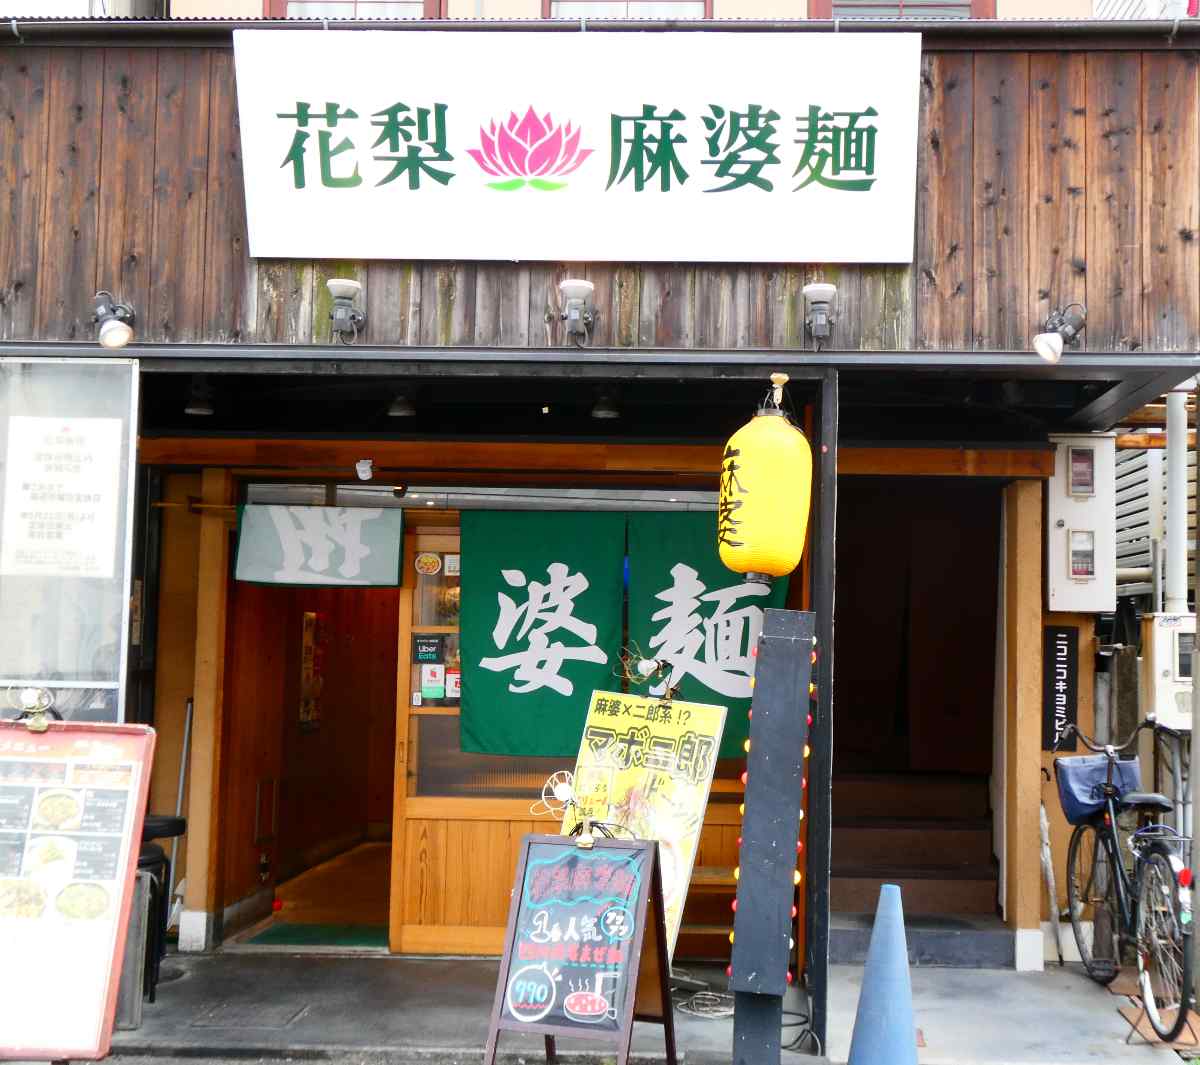 阪神尼崎近く『花梨麻婆麺』で「麻婆麵」をいただいてきました 尼崎市 [画像]